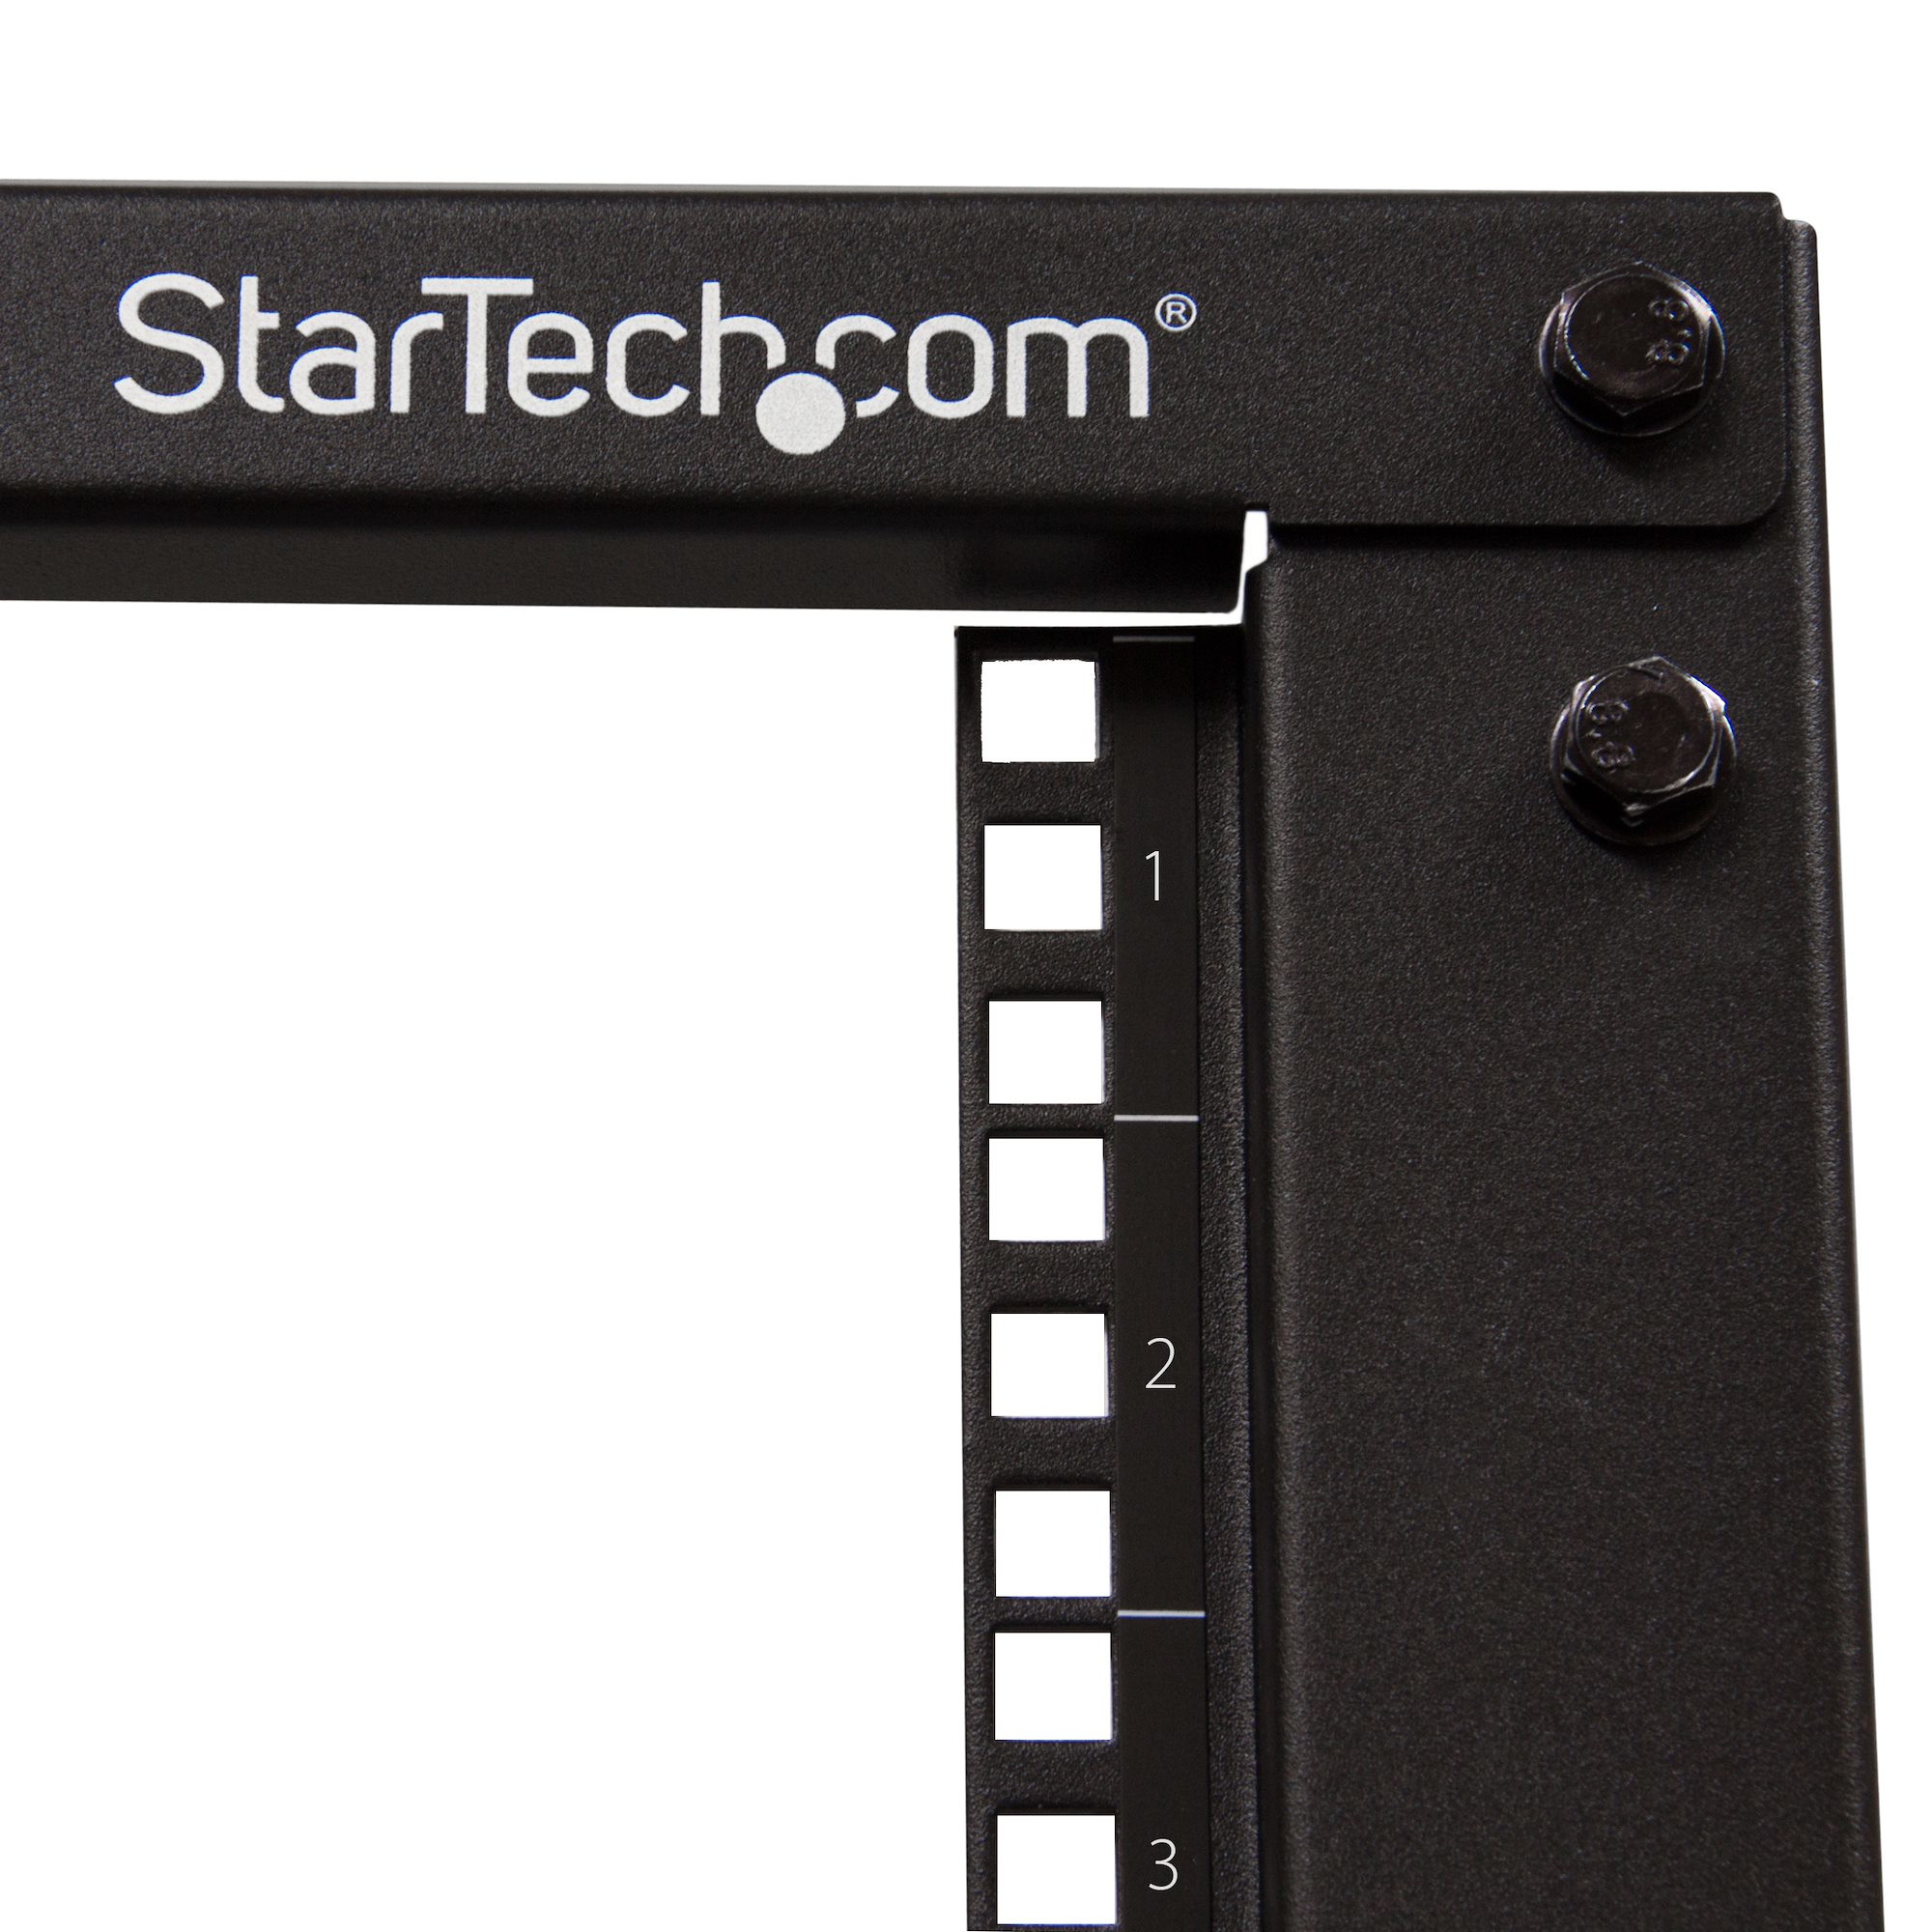 StarTech.com Armadio Server Rack con 4 staffe a Telaio Aperto 15U con profondit regolabile da 59-104cm - Rack per apparecchiature di rete con rotelle, livellatori e gestione dei cavi